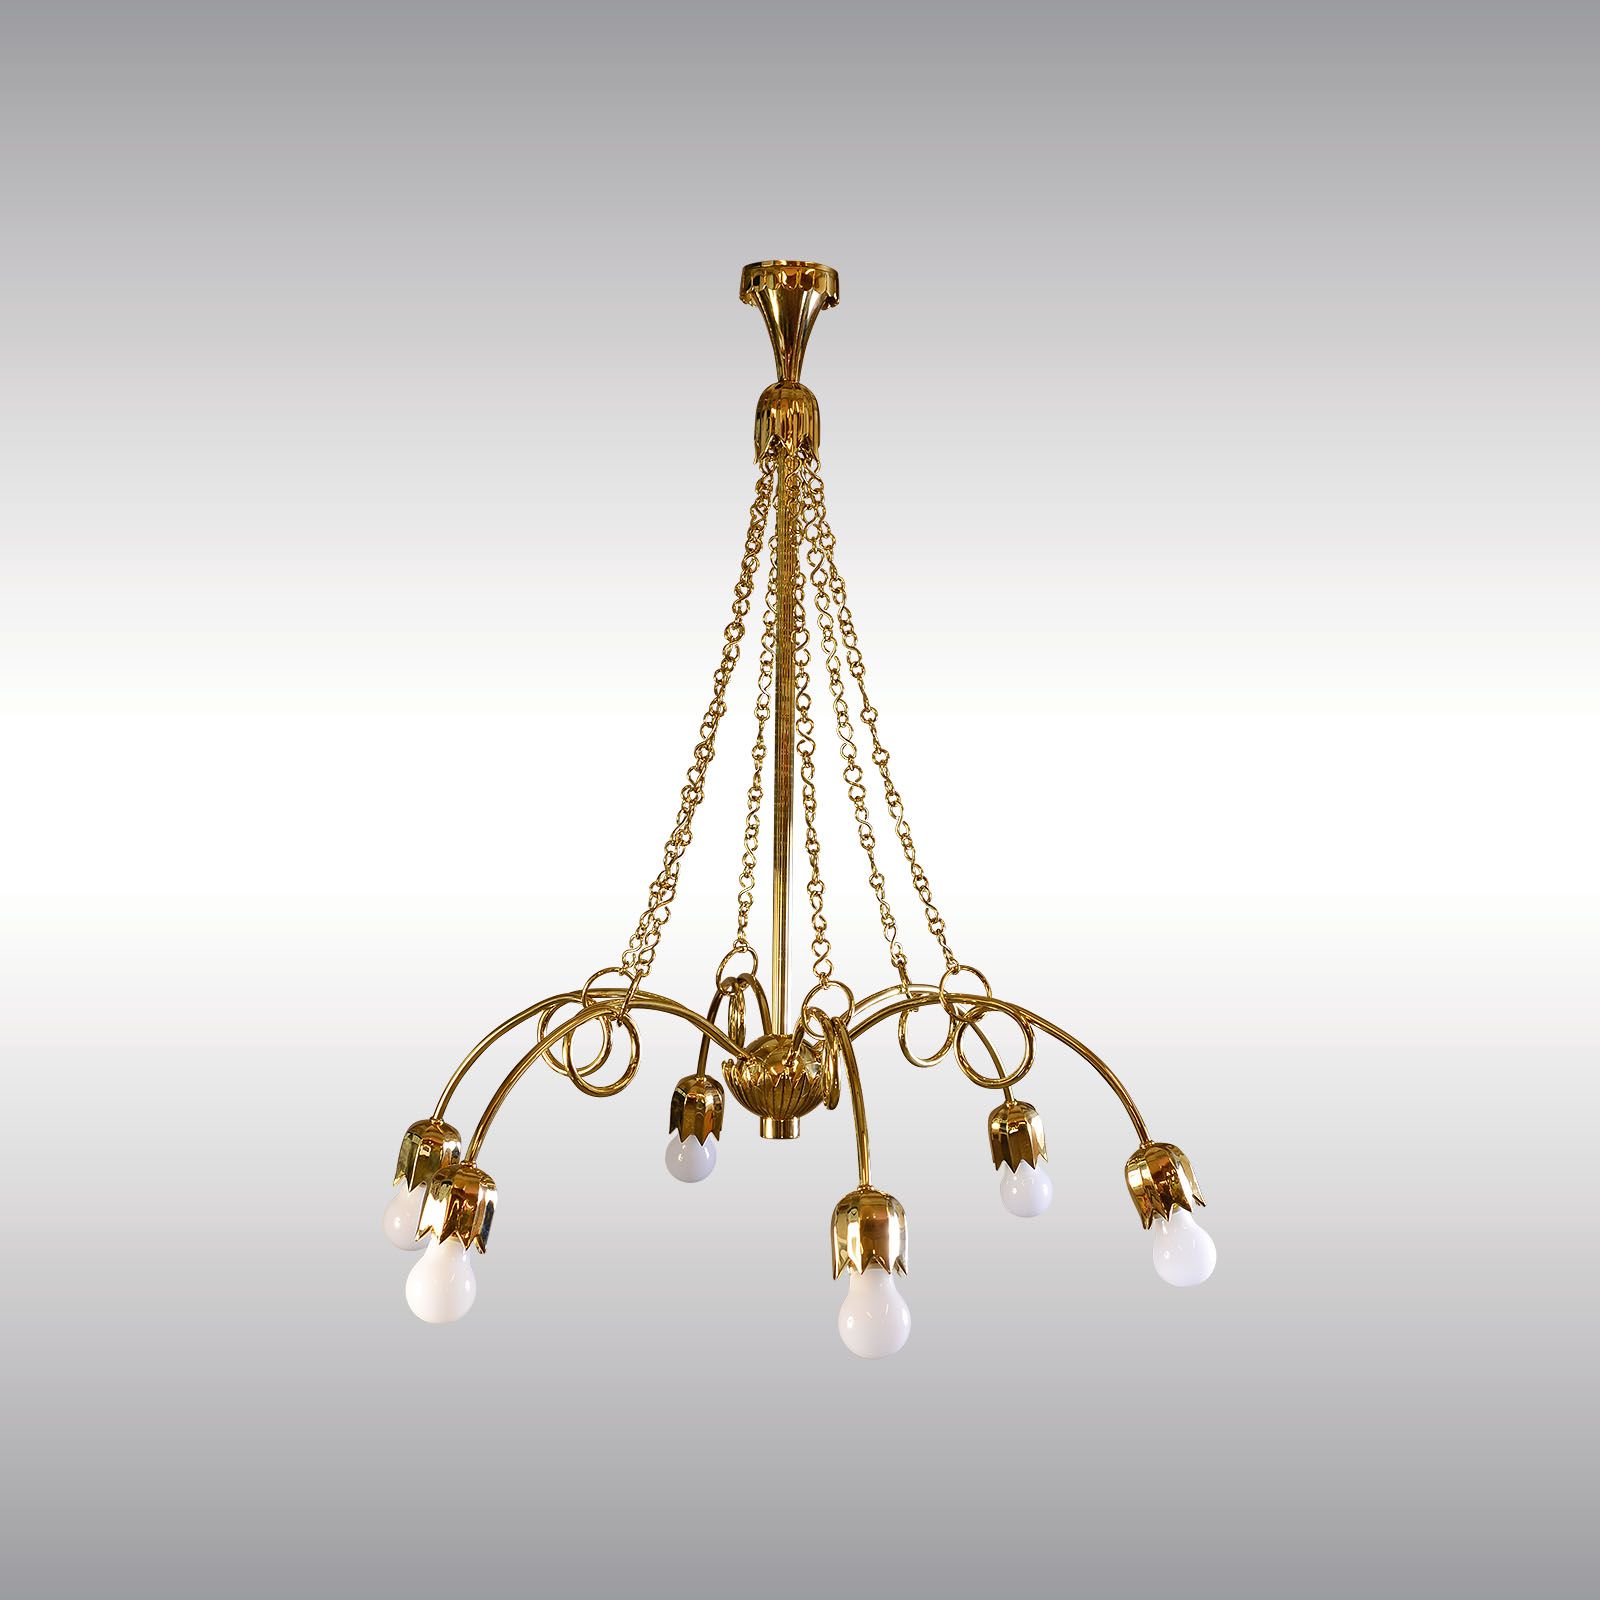 WOKA LAMPS VIENNA - OrderNr.: 21516|Brass Chandelier - Design: Josef Hoffmann